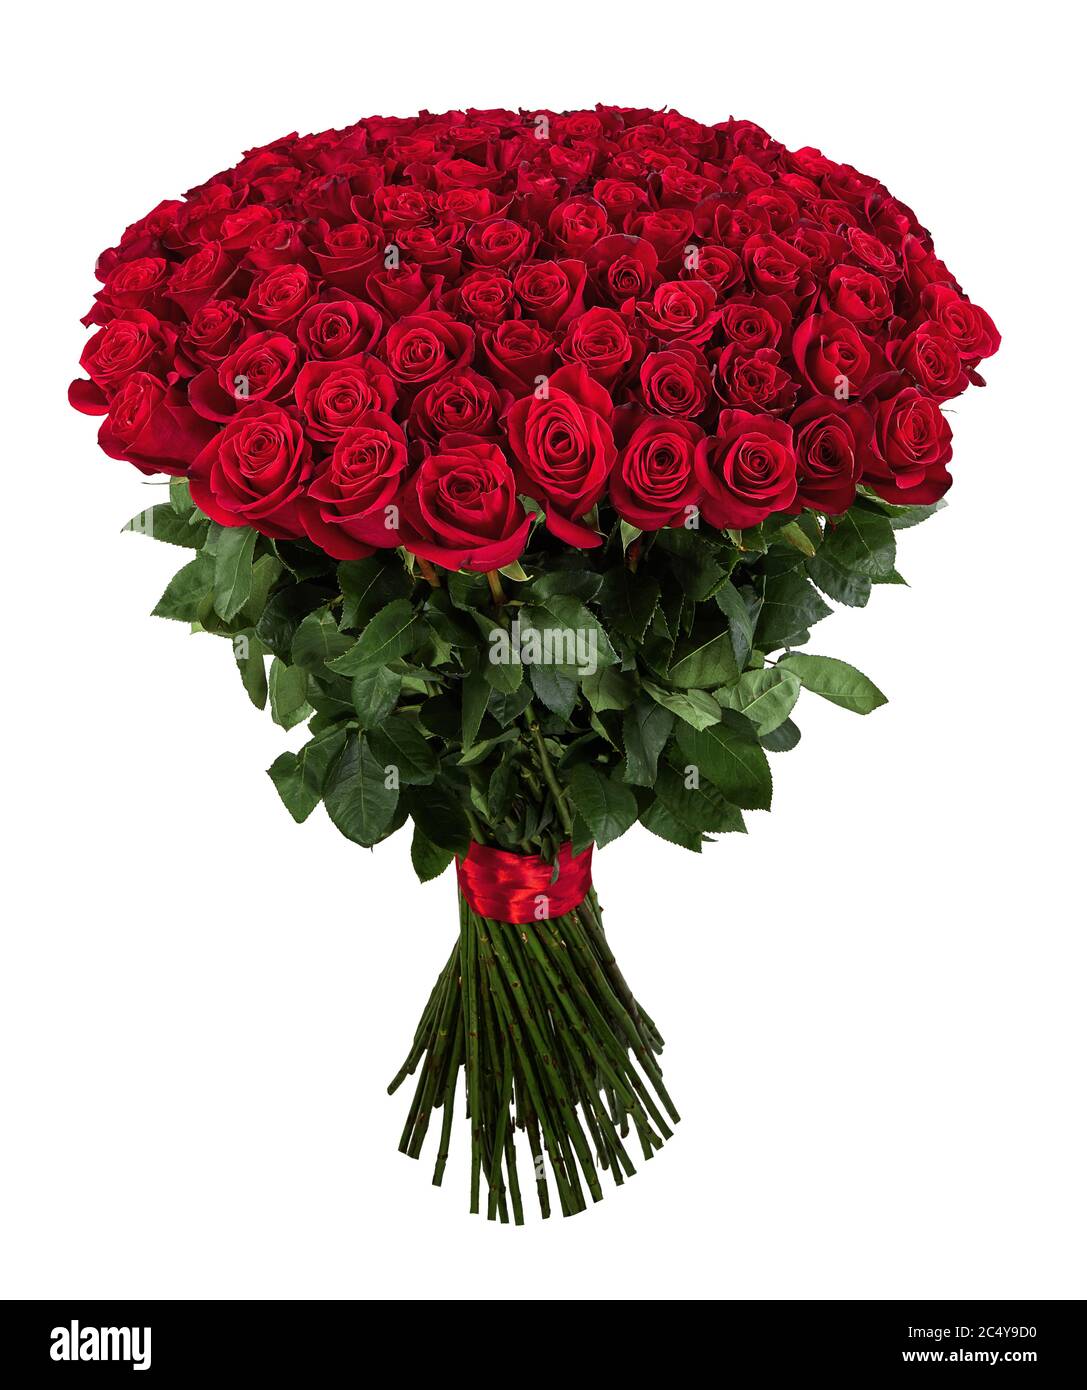 Rose rouge. Grand bouquet isolé de 101 roses rouges sur blanc Photo Stock -  Alamy